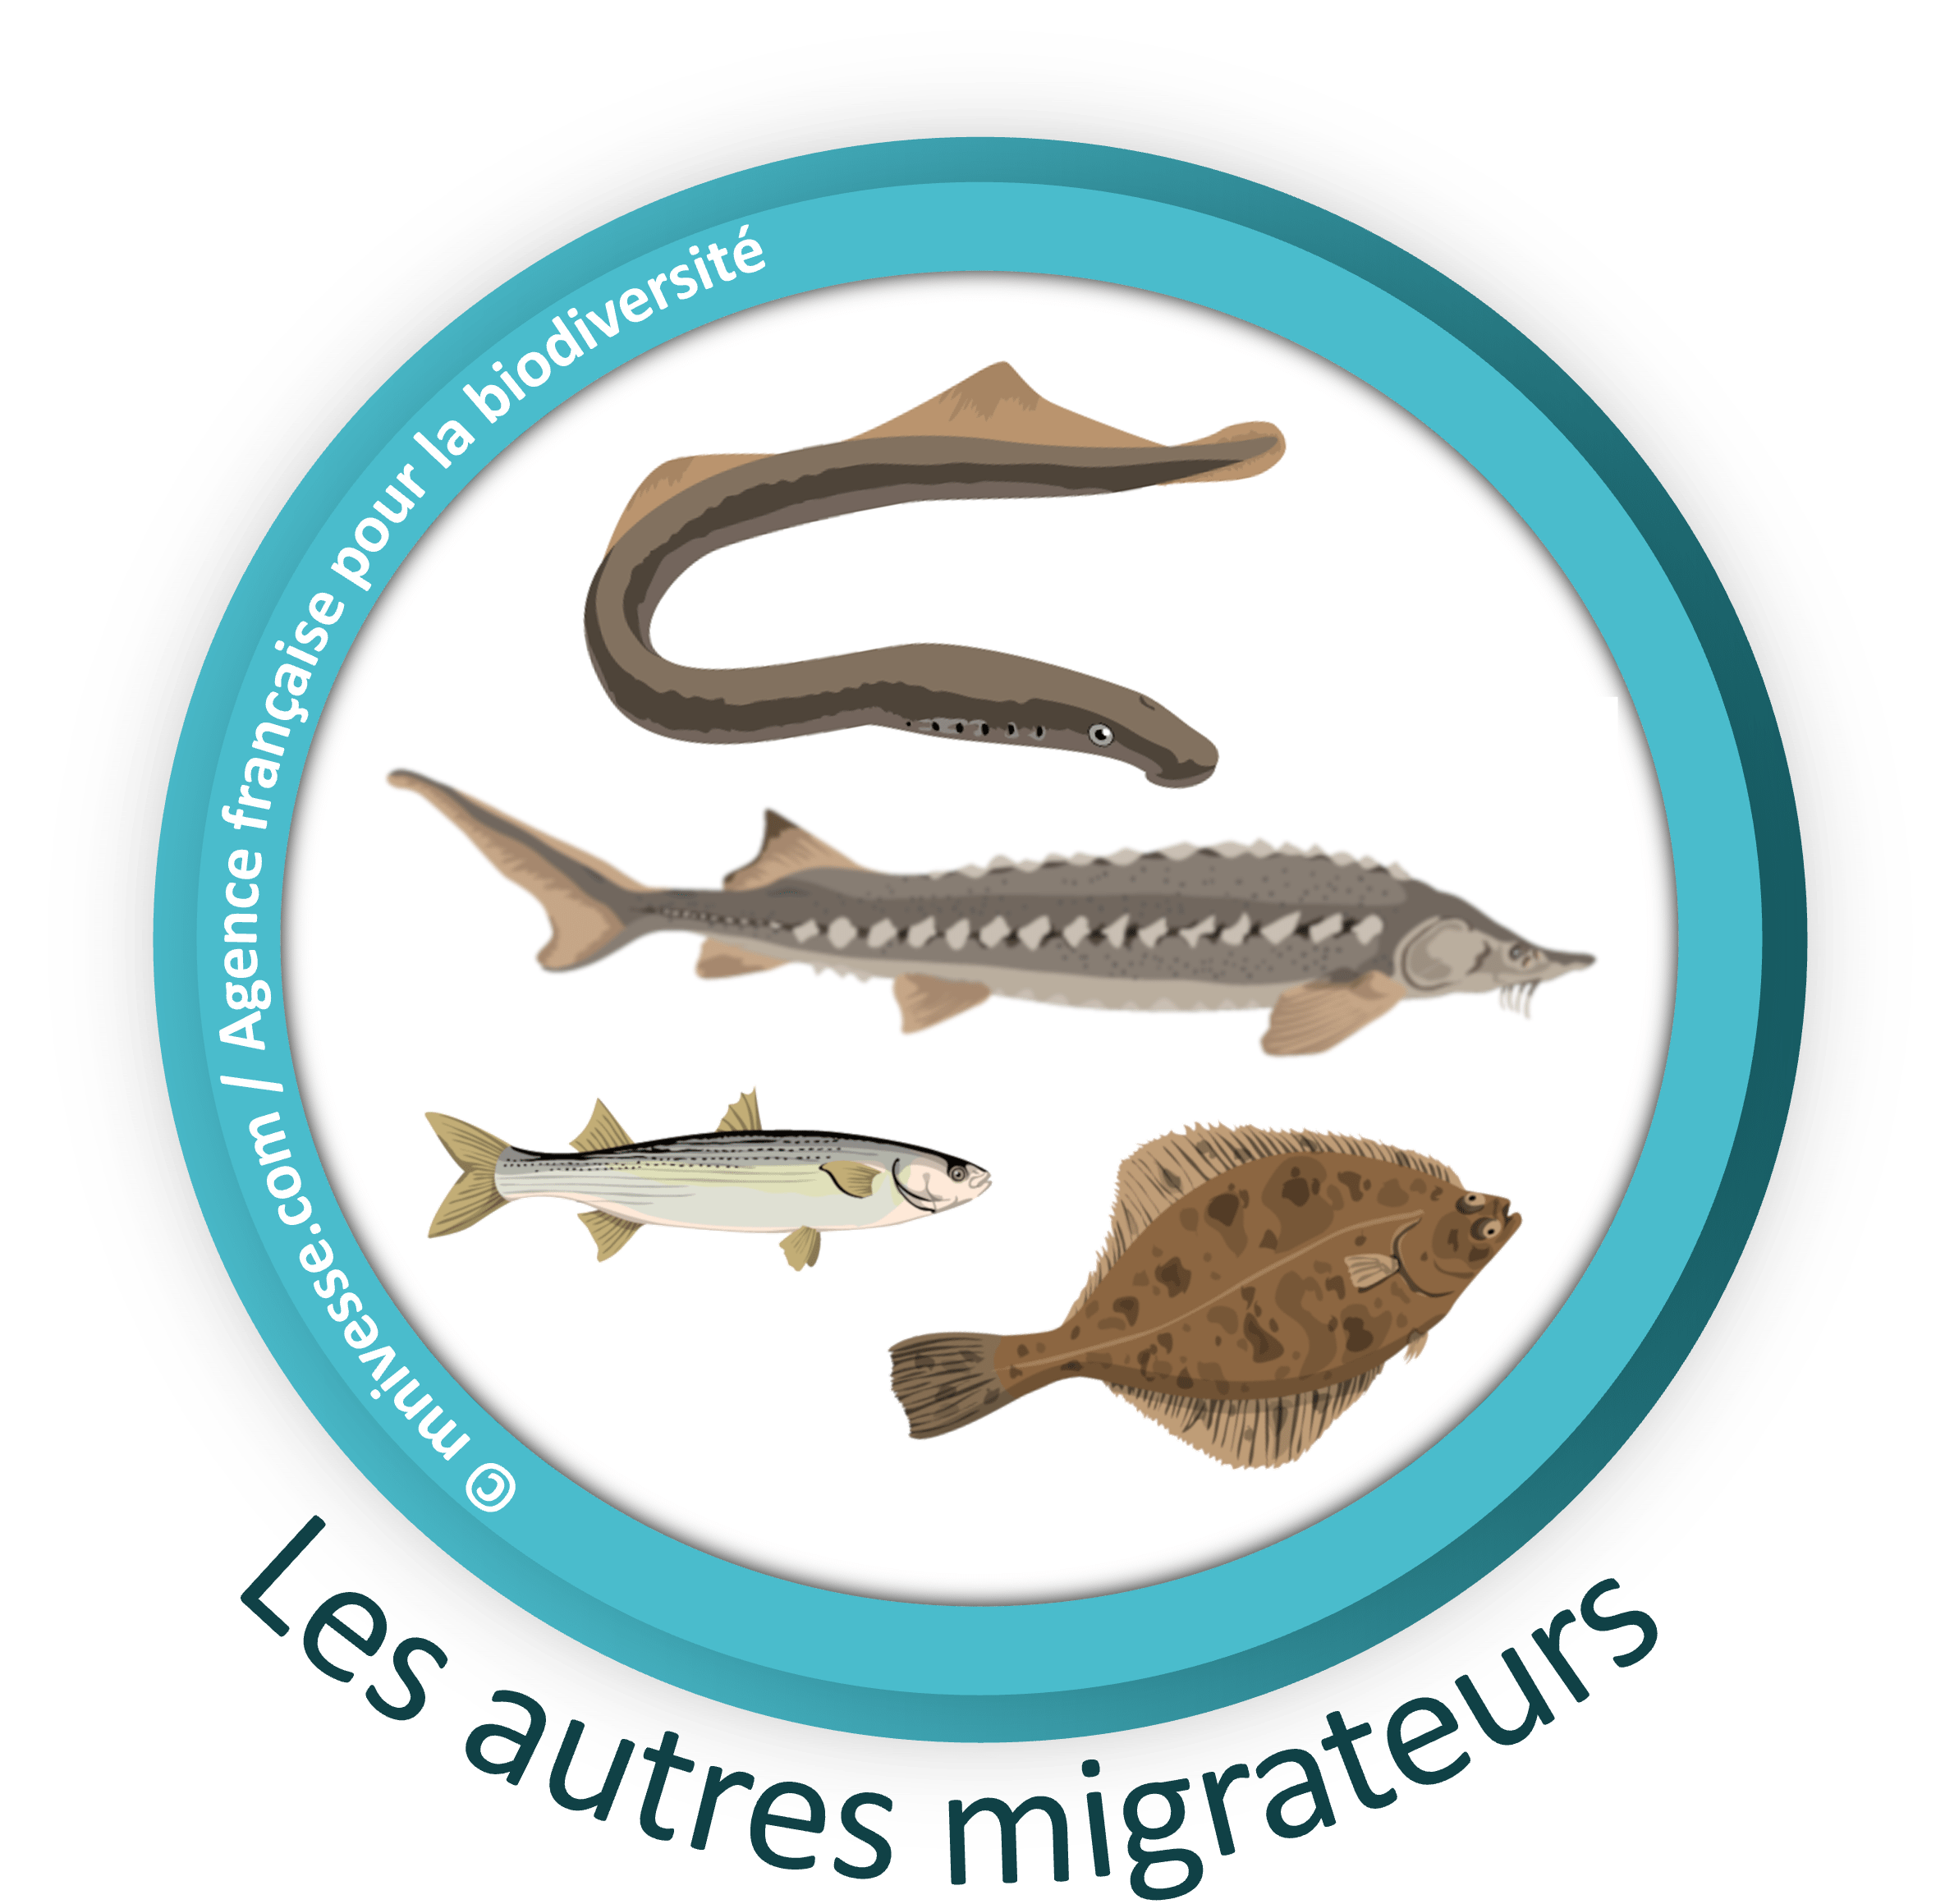 Les Autres espèces de poissons migrateurs du bassin Rhône-Méditerranée